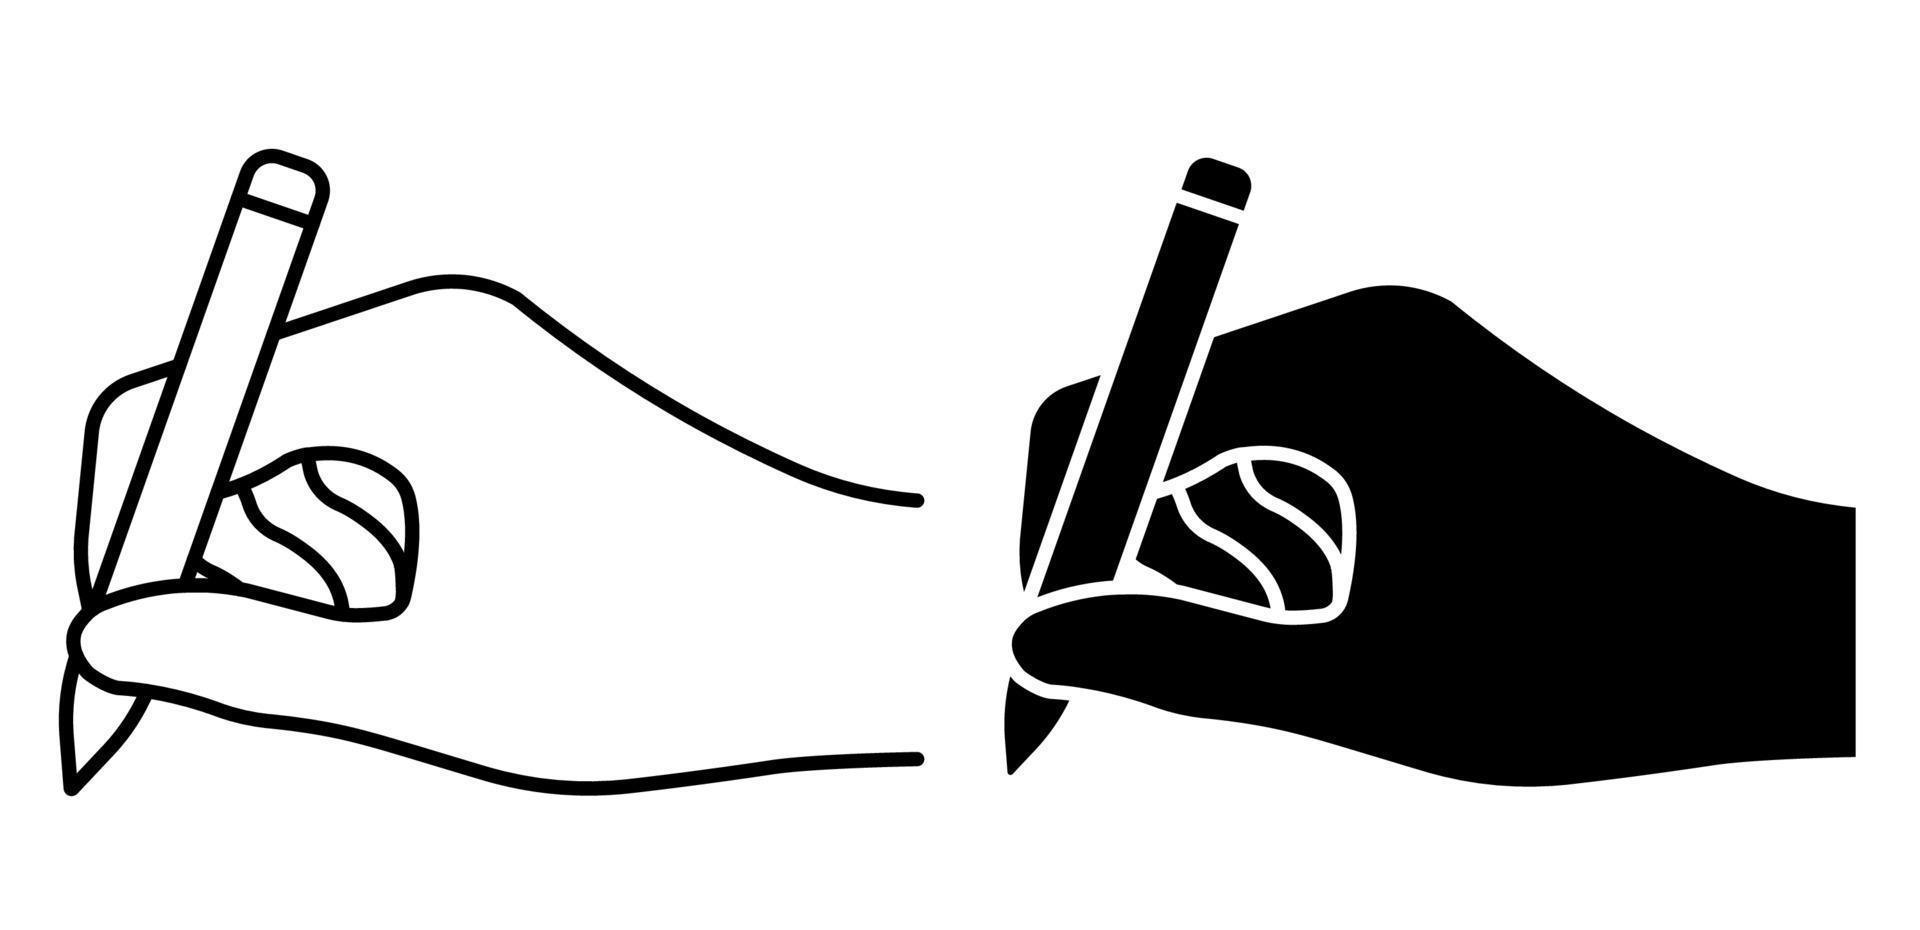 icône linéaire. stylo à bille dans la main de l'auteur. signature sur papier de l'écrivain ou de l'artiste. vecteur noir et blanc simple isolé sur fond blanc